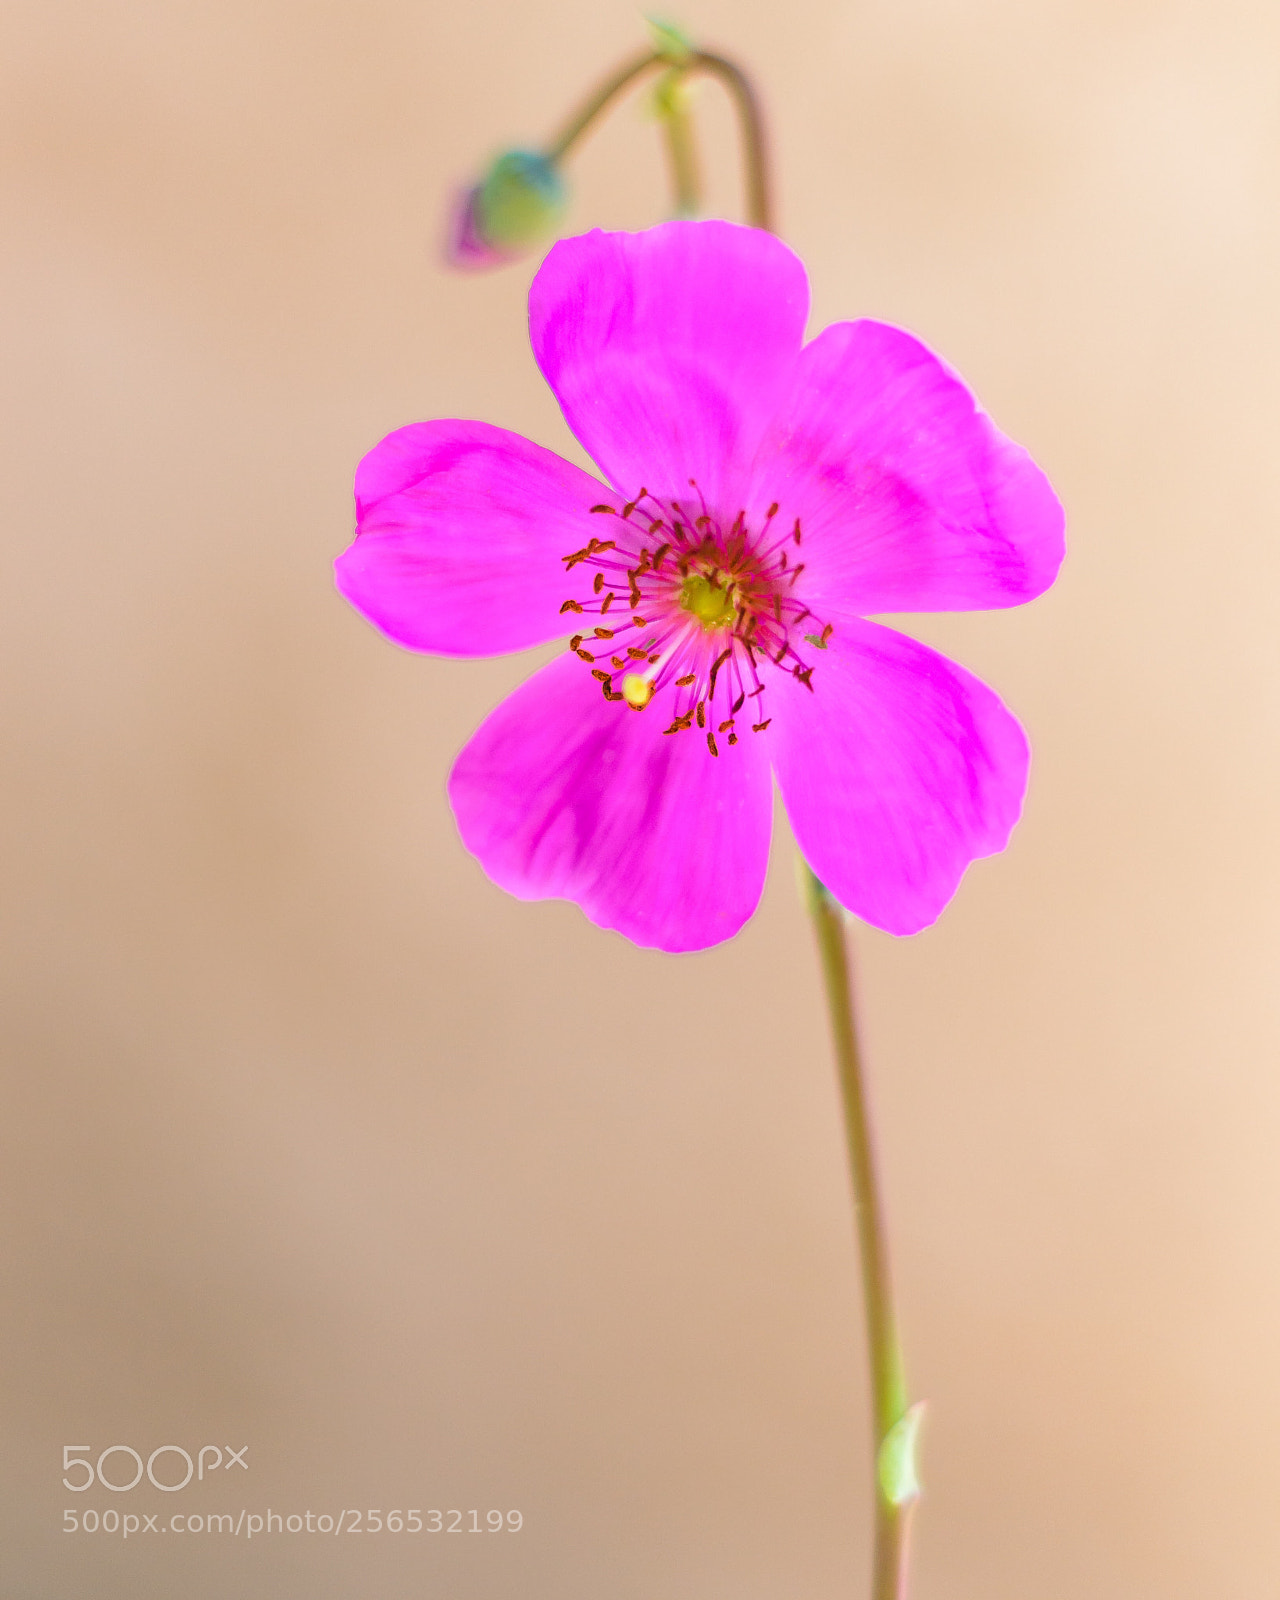 Nikon D7000 sample photo. Succulent flower  photography